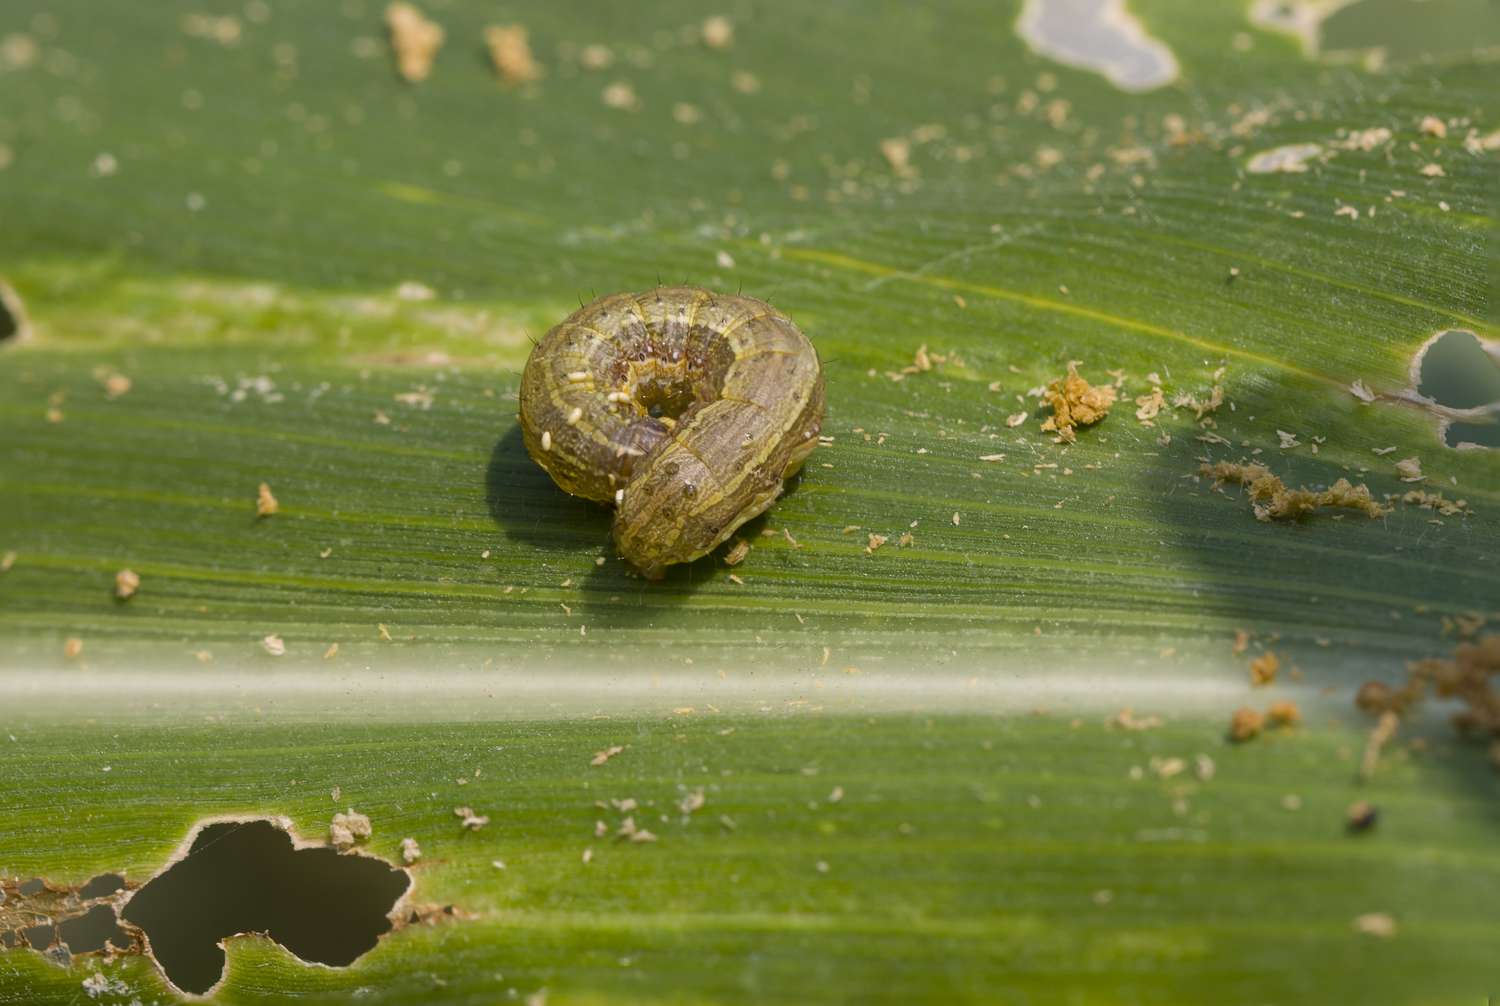 Fall armyworm (Spodoptera frugiperda) on corn leaf